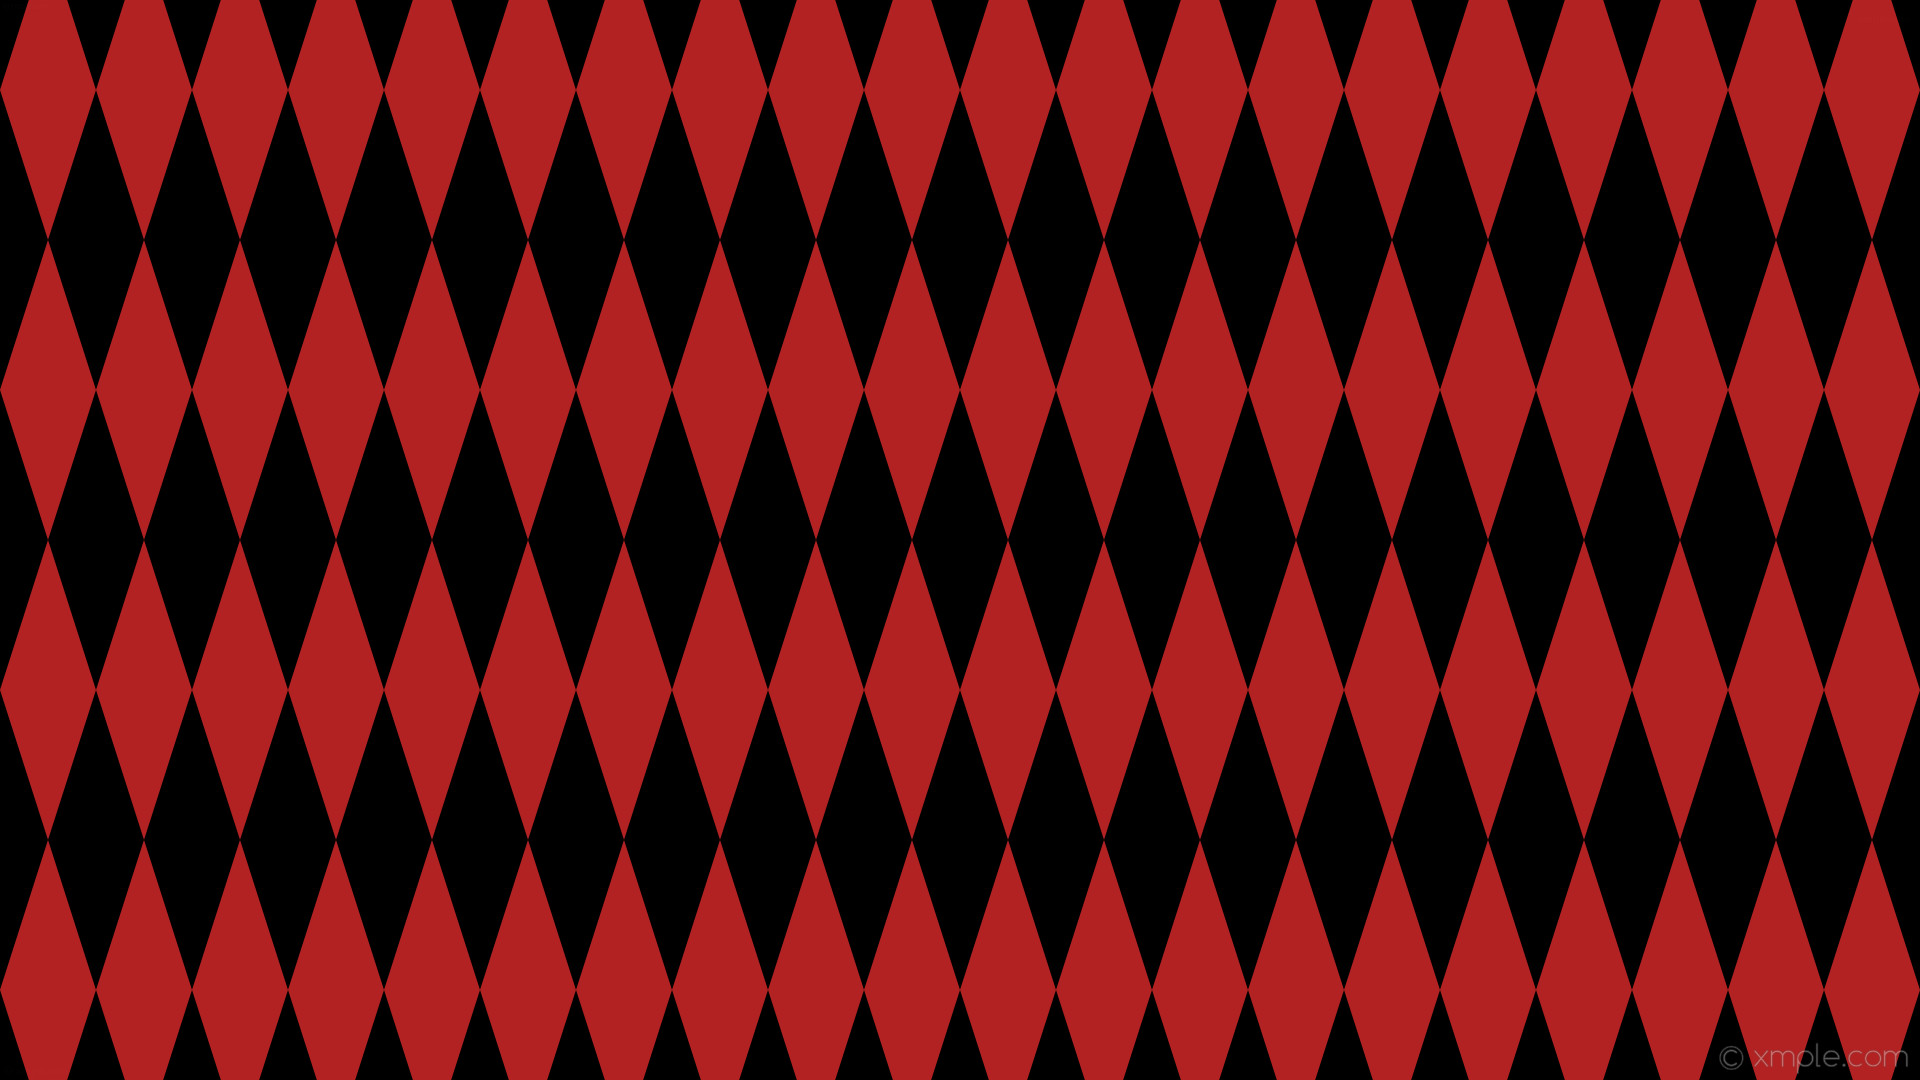 1920x1080 wallpaper red lozenge black diamond rhombus fire brick #000000 #b22222 90Â°  300px 96px